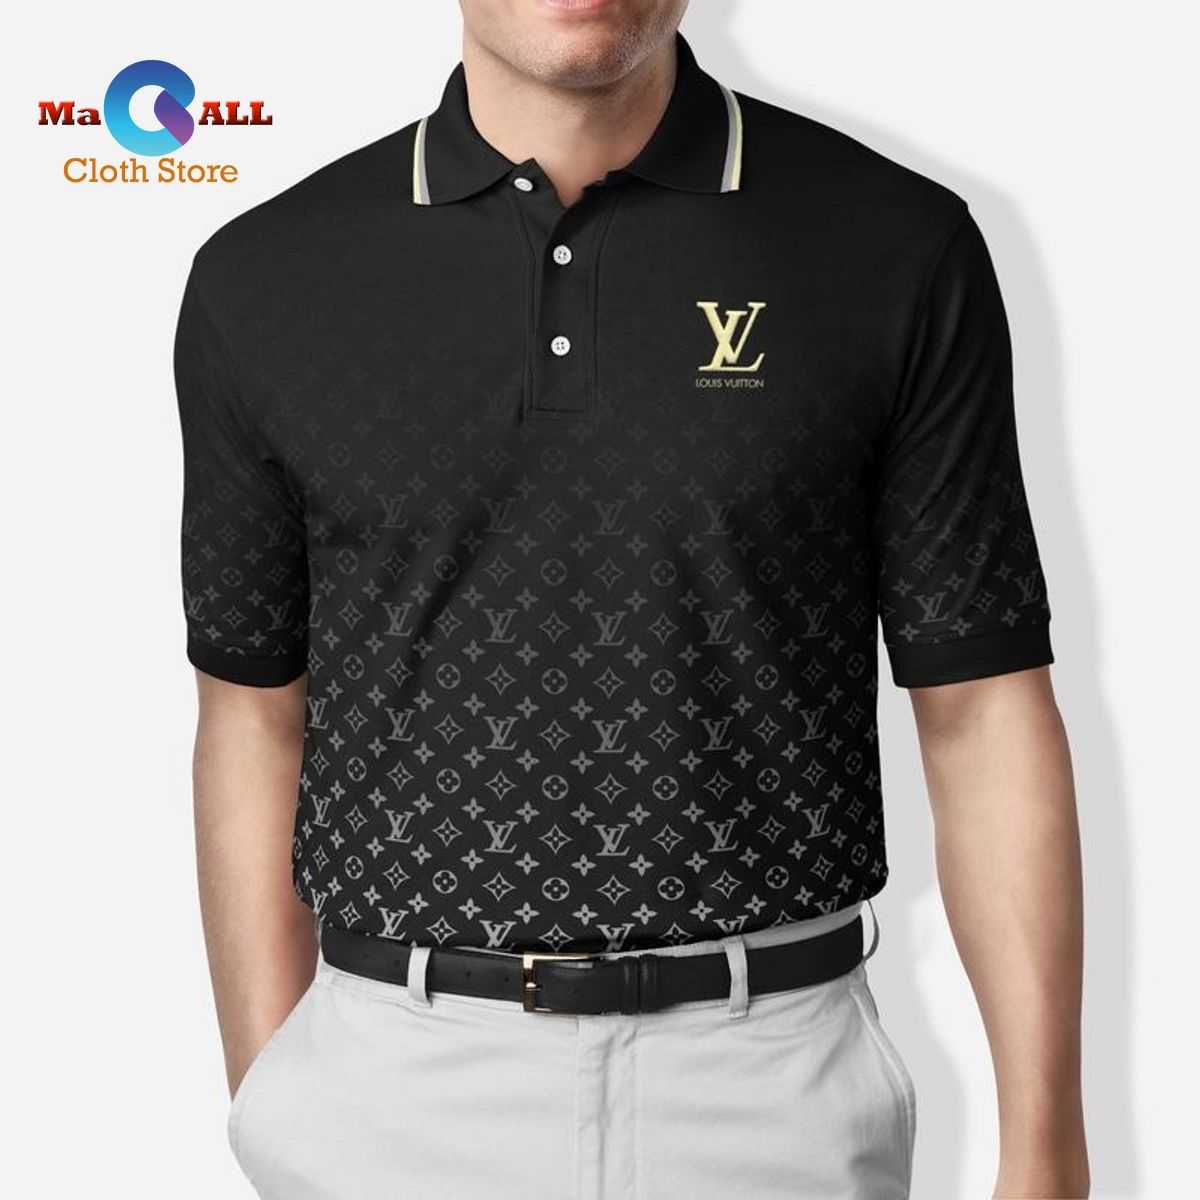 Louis Vuitton Embossed LV Tshirt